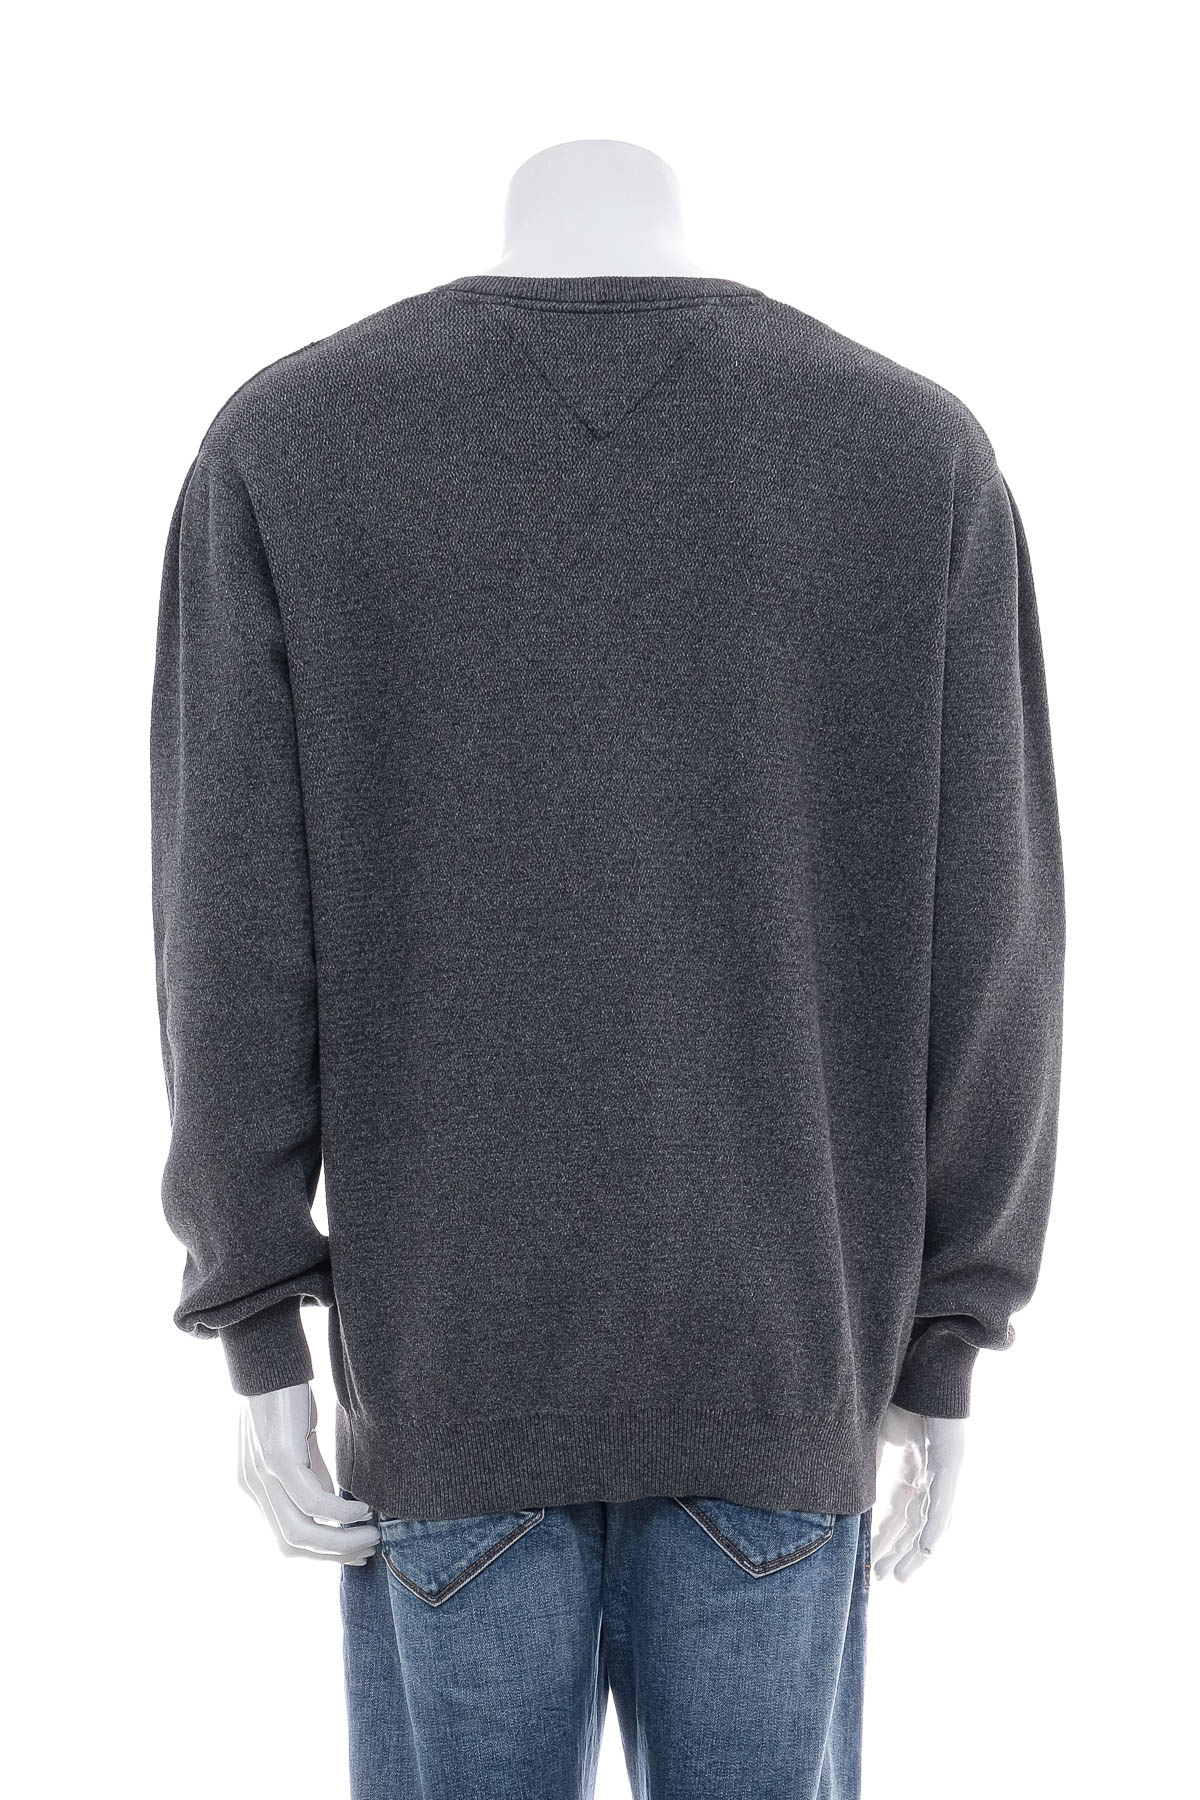 Men's sweater - Casa Moda - 1